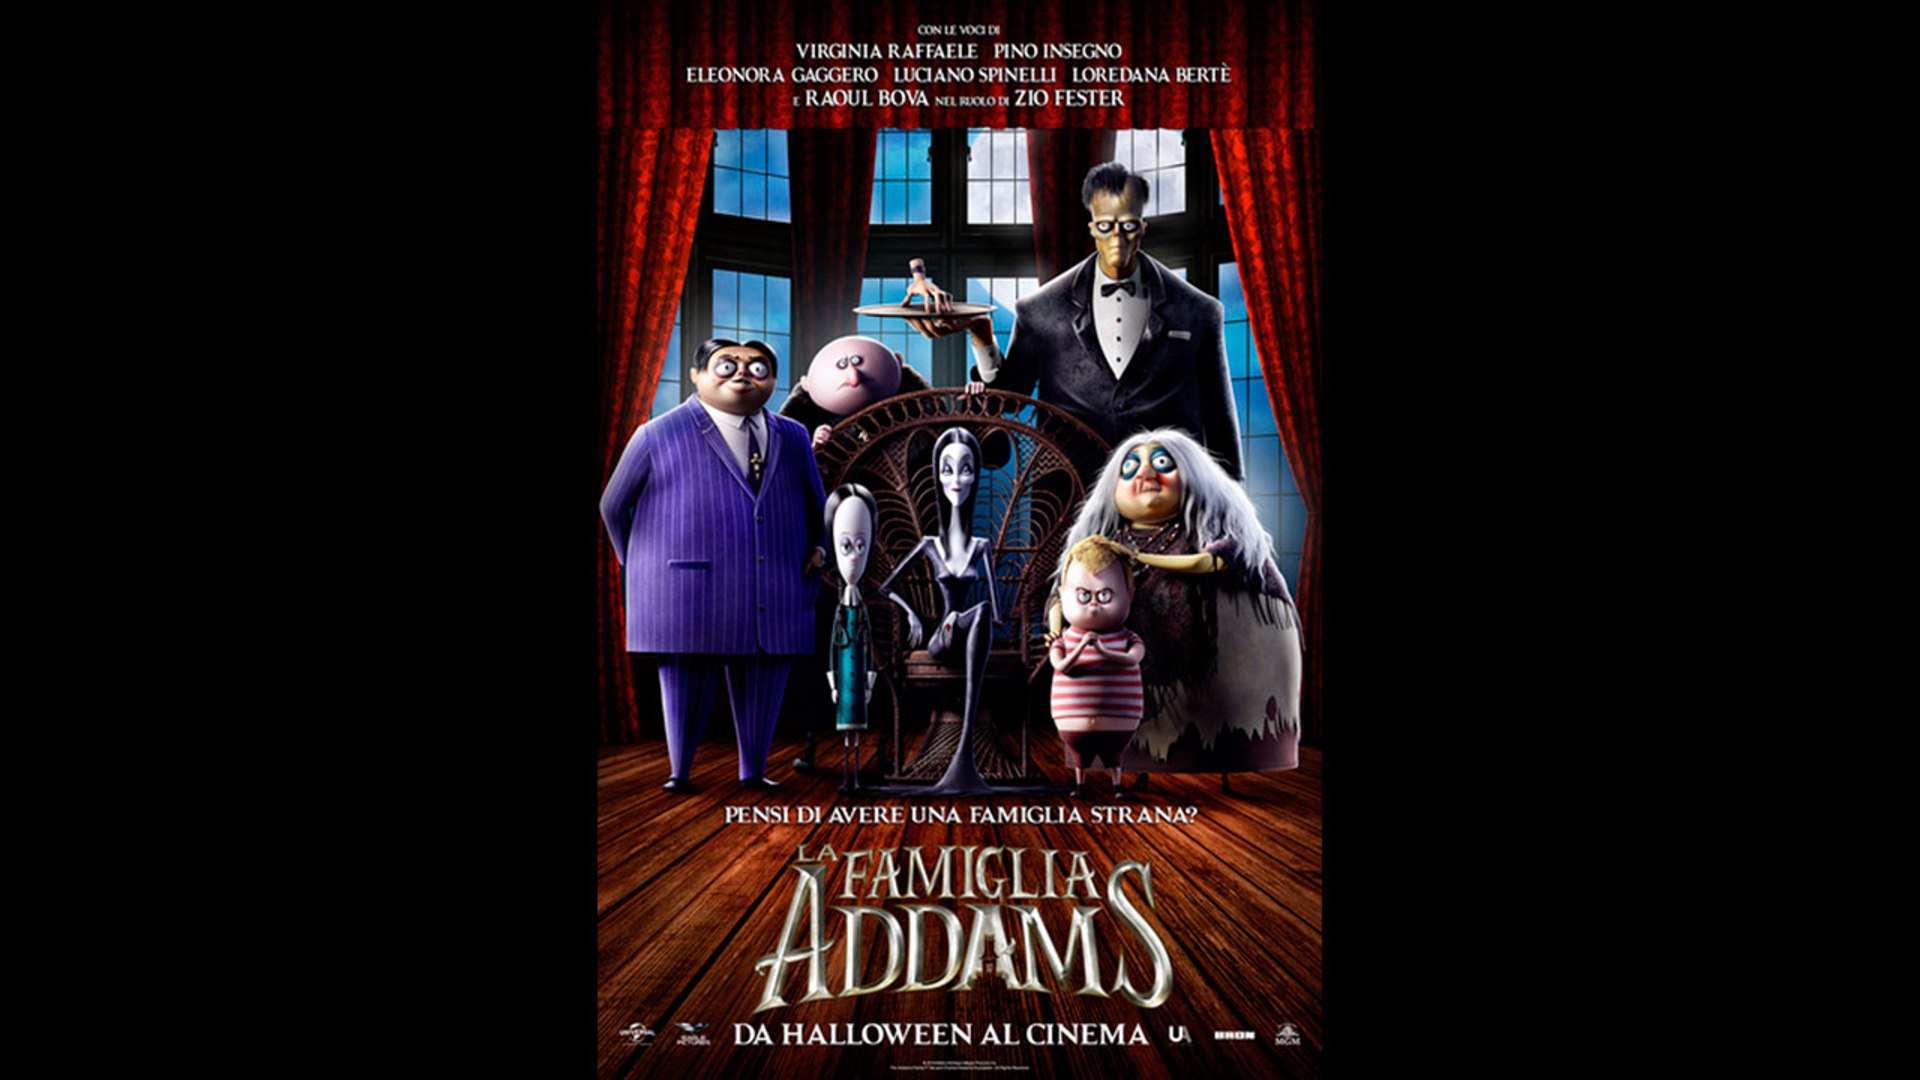 La Famiglia Addams 2019 Ita Streaming